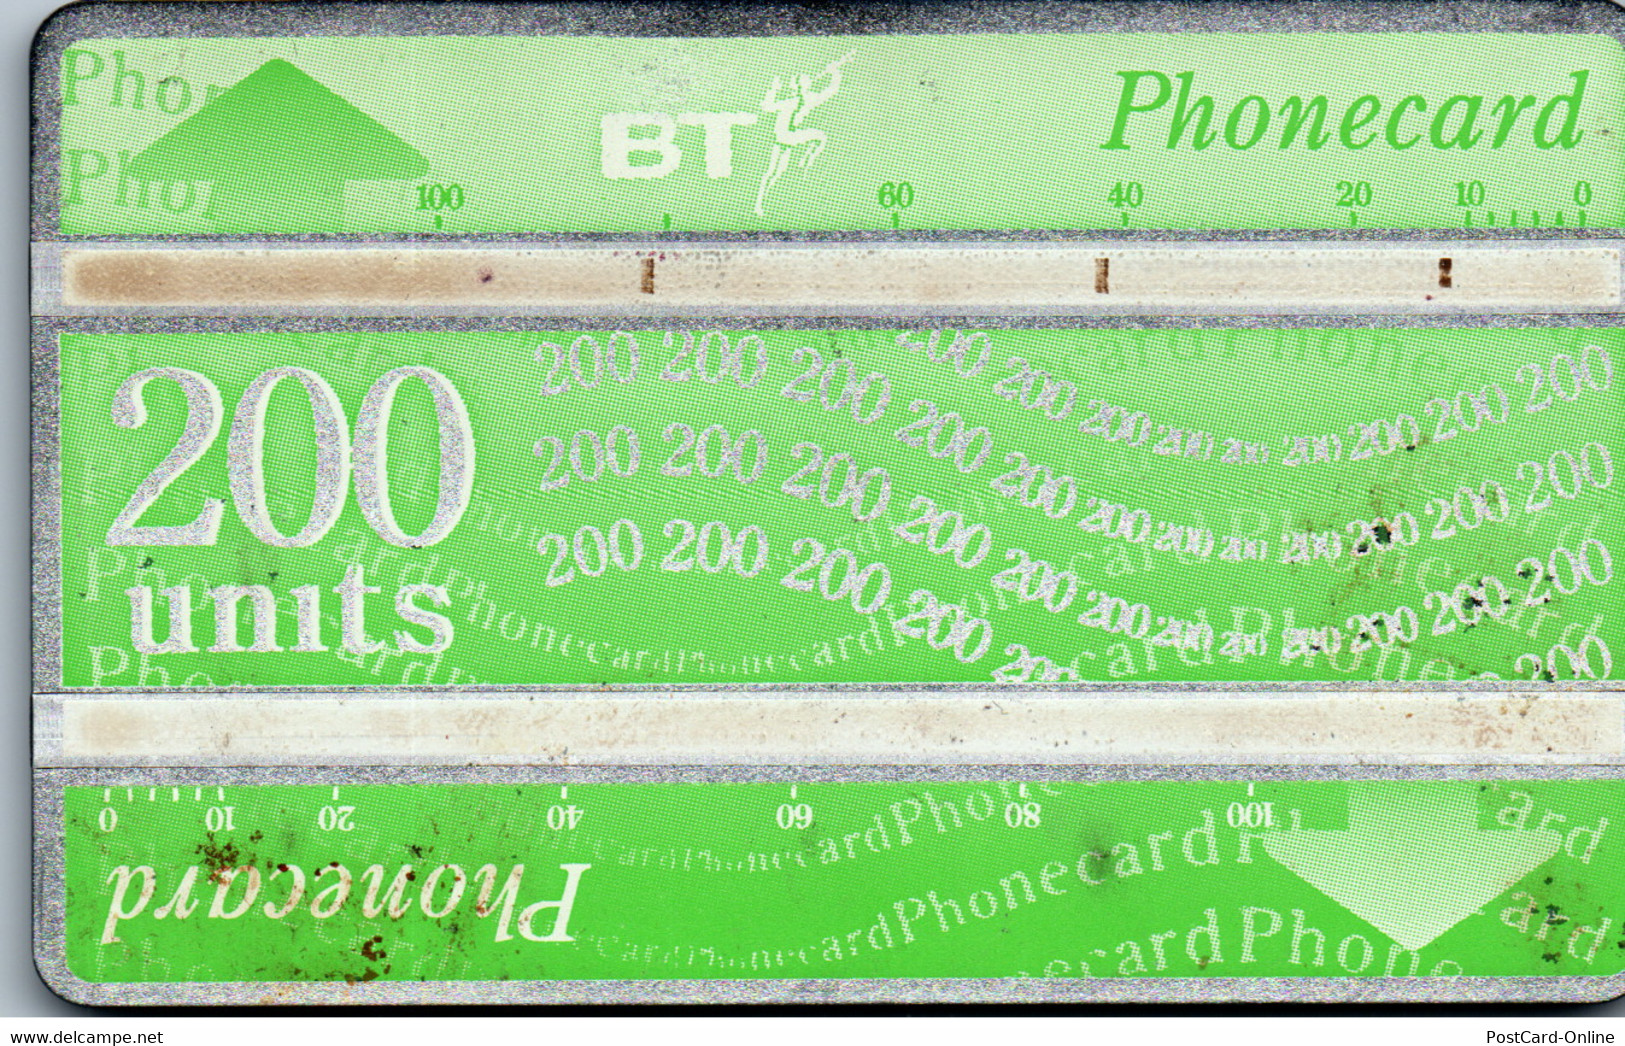 26479 - Großbritannien - BT , Phonecard - BT Edición General